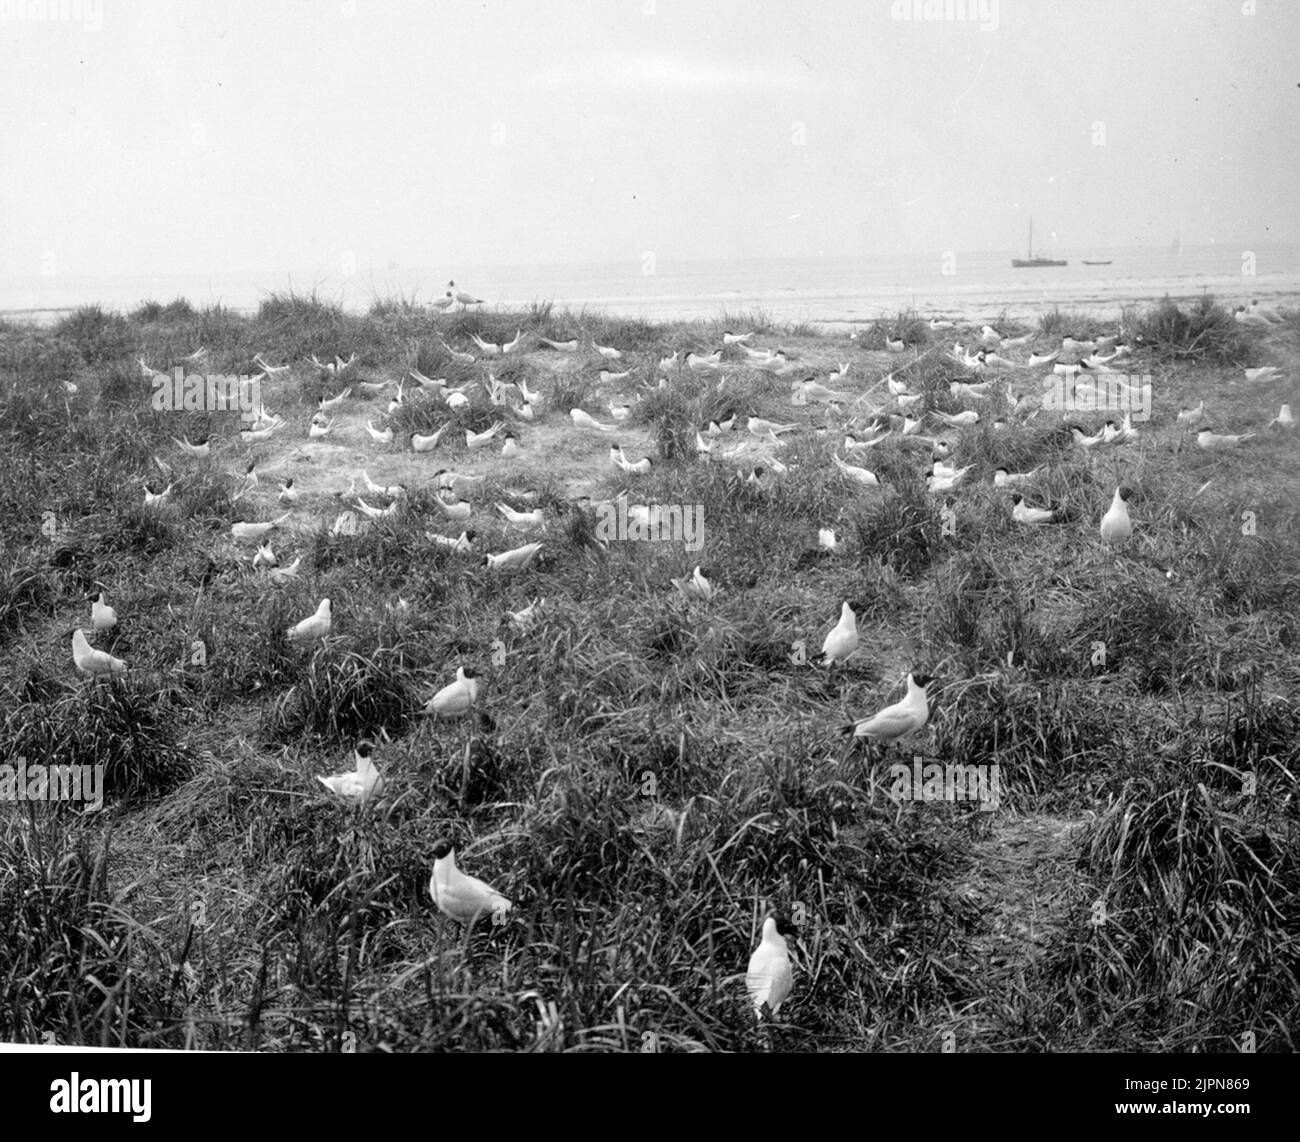 Kentska Tärnkolonia, Sterna Cantiaca, gulls in the foreground, 24/5 1926 Kentska tärnkolonien, Sterna cantiaca, skrattmåsar i förgrunden, 24/5 1926 Stock Photo